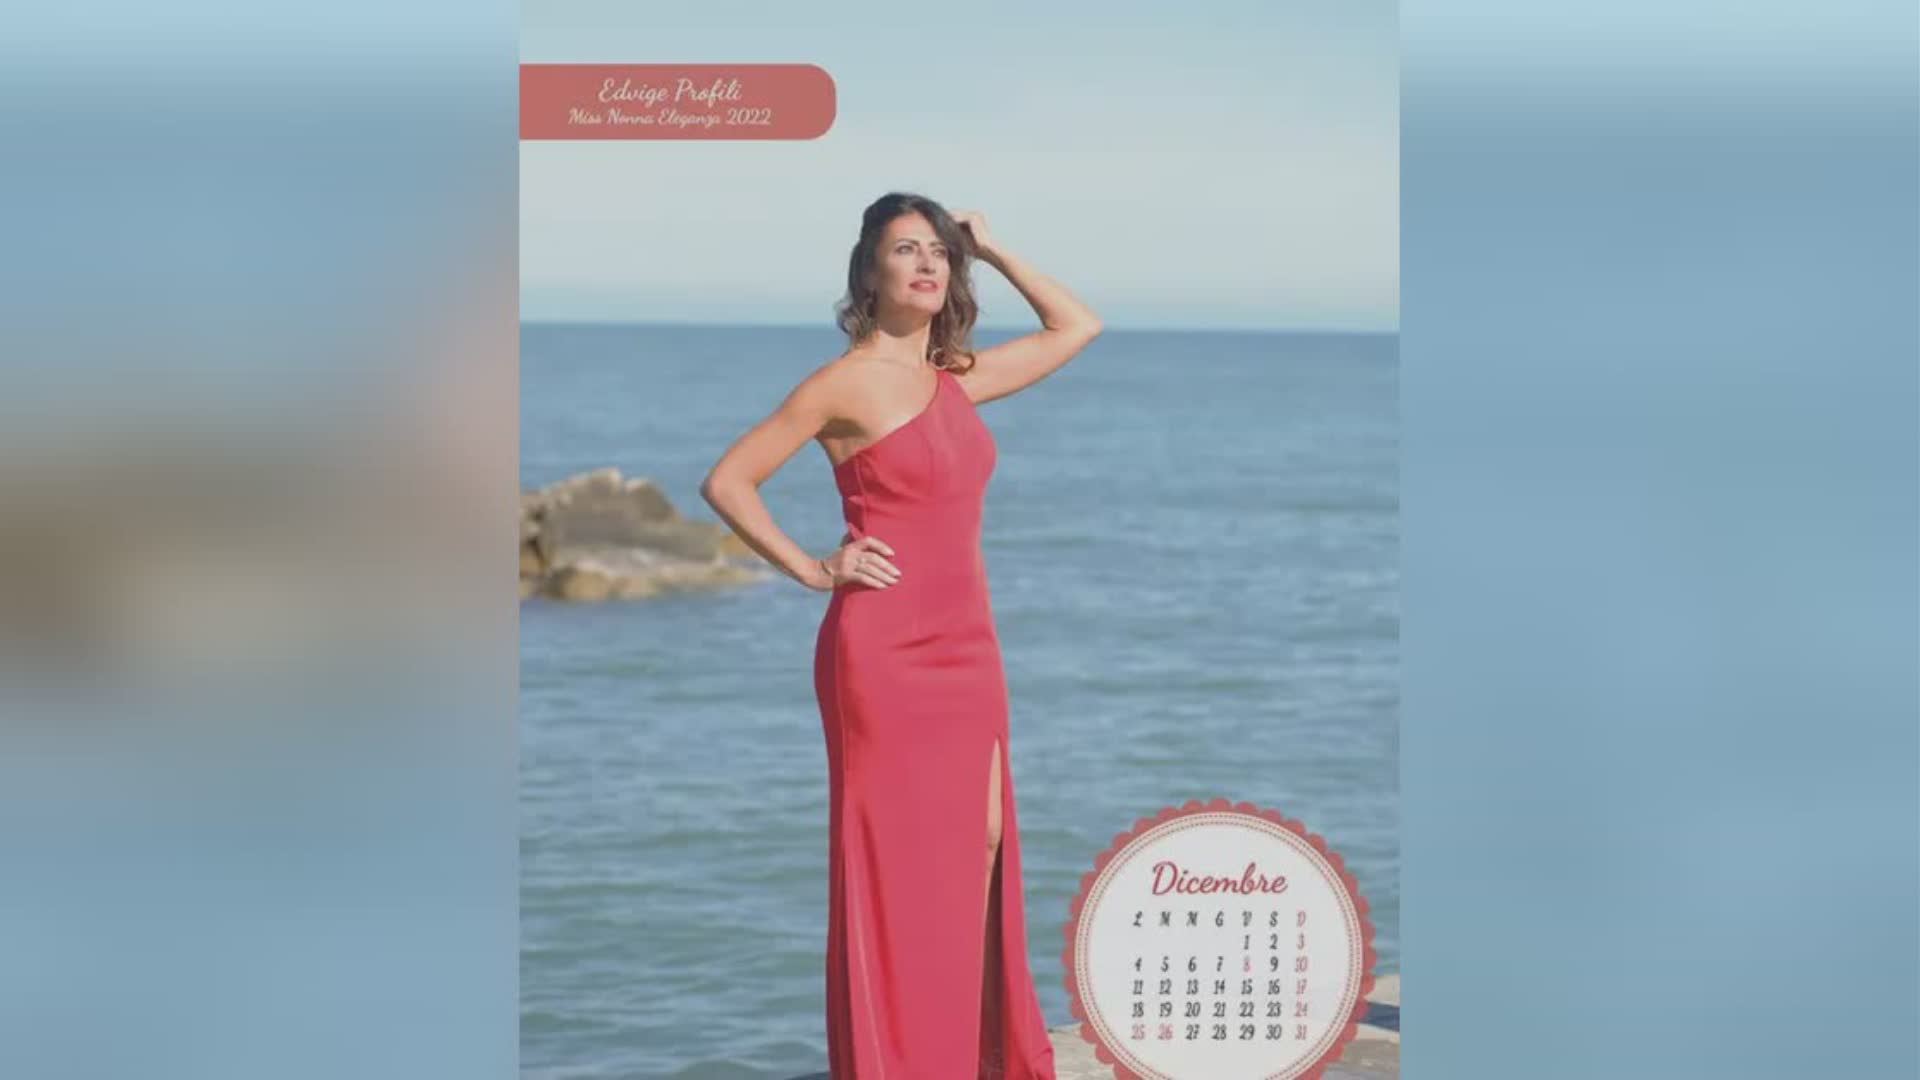 Edvige Profili sul calendario di Miss Nonna 2023